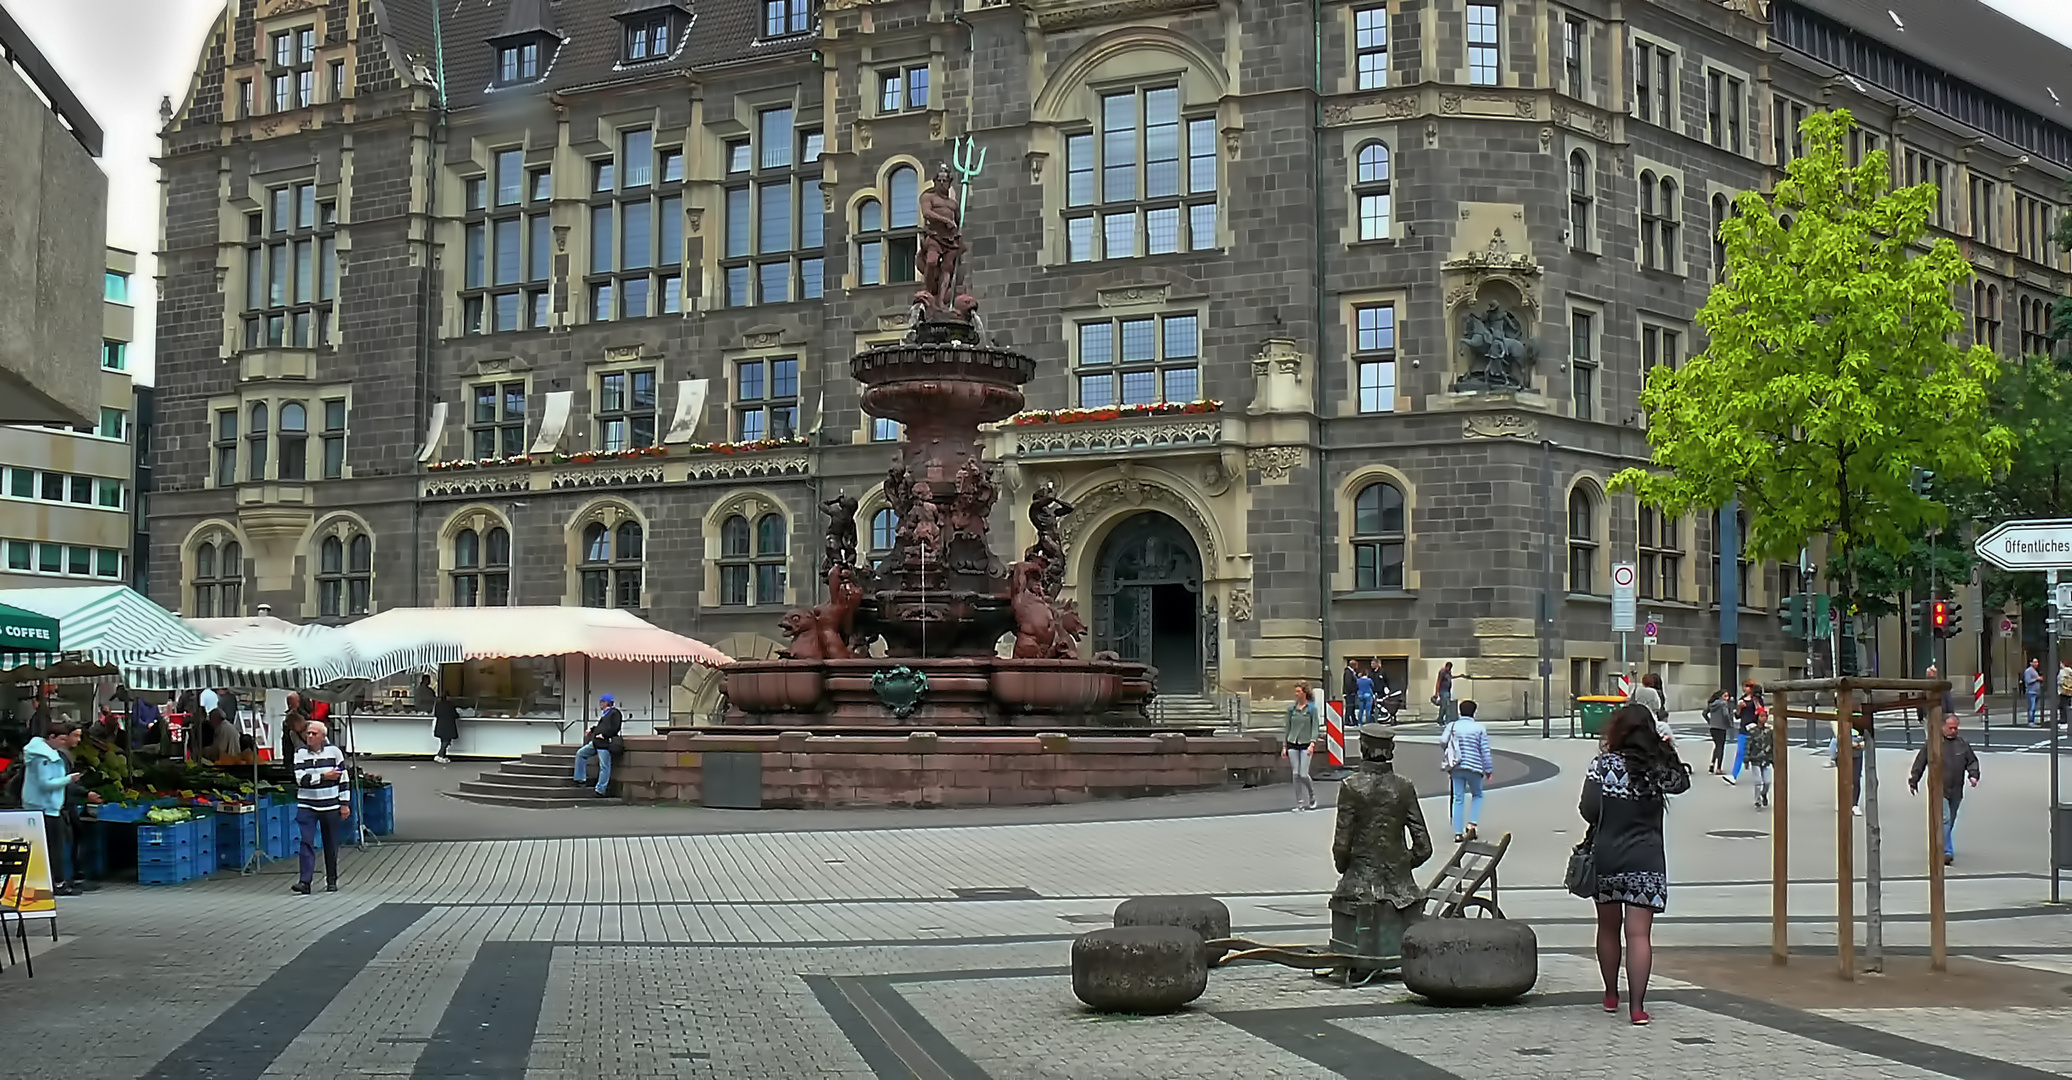 W'tal [459] Jubiläumsbrunnen vor dem Elberfelder Rathaus